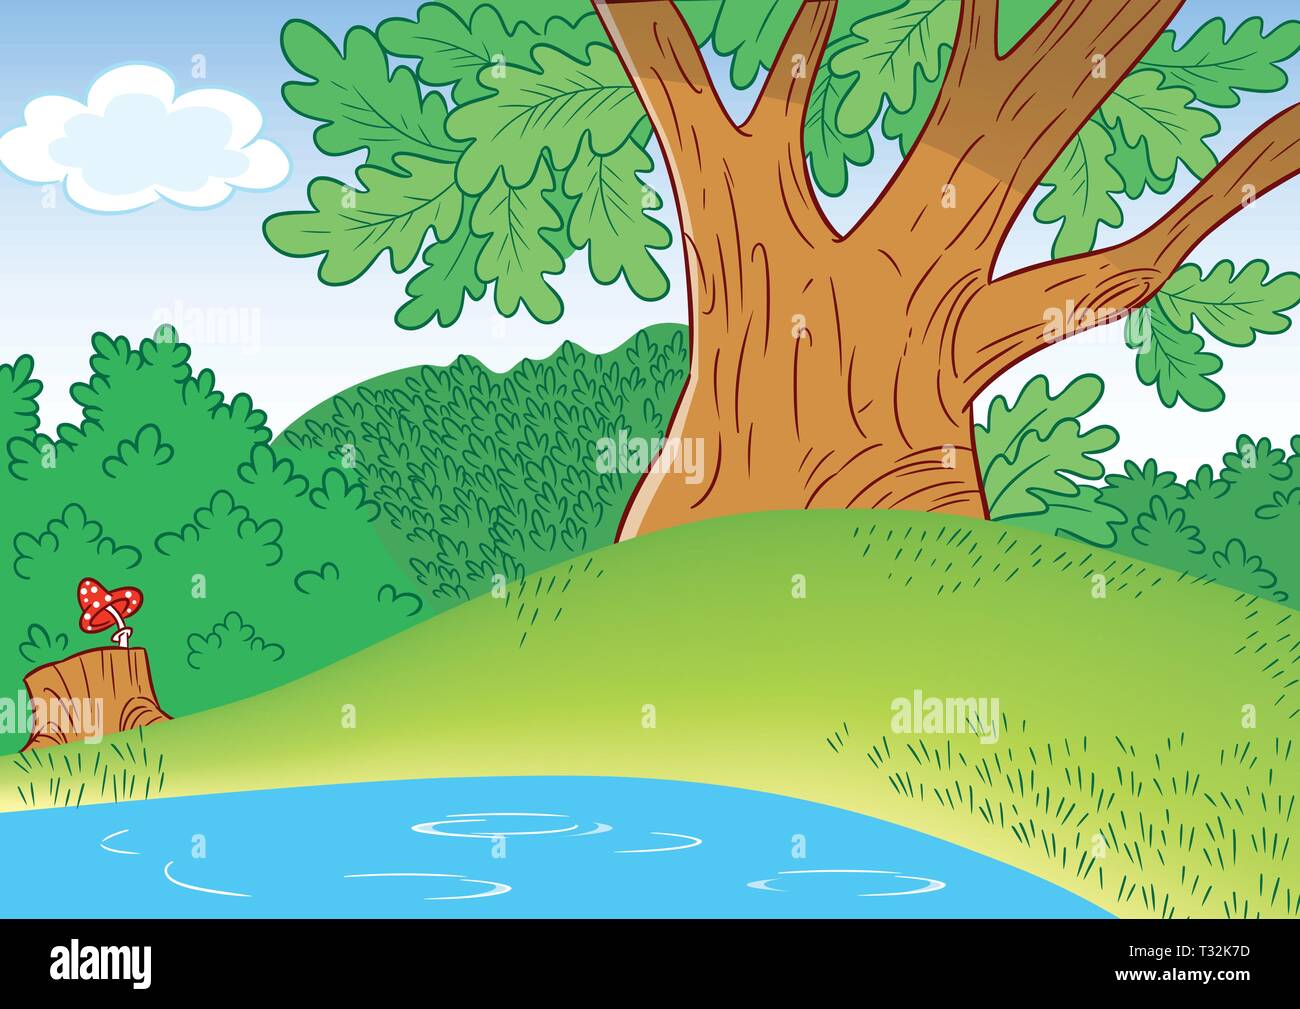 L'illustration montre une partie d'un grand chêne dans une clairière de la forêt, et une partie d'un petit étang dans un style cartoon Illustration de Vecteur